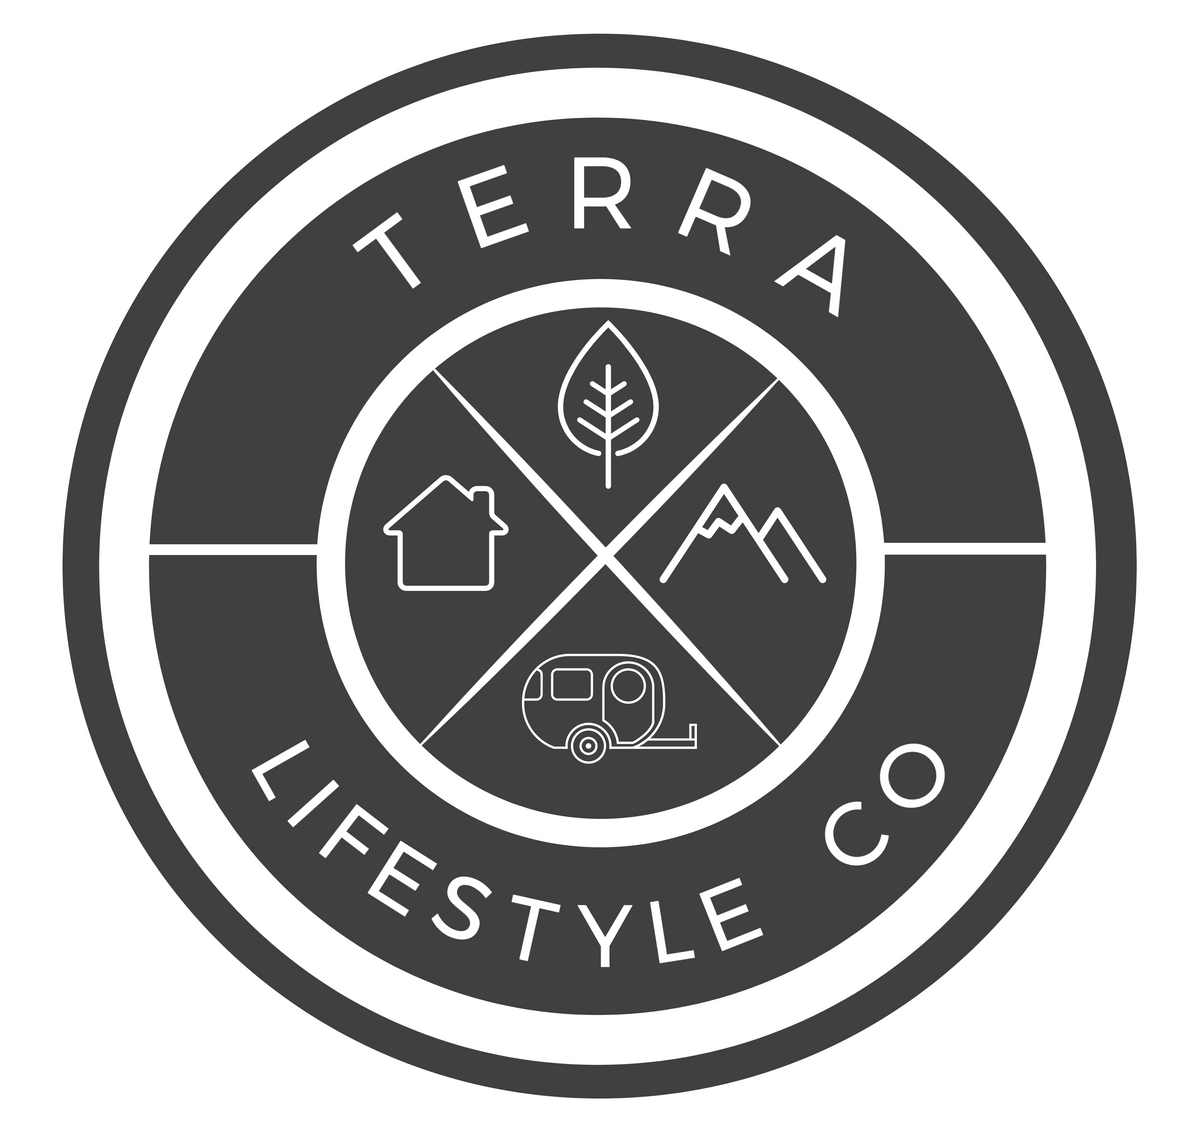 Terra Lifestyle Co